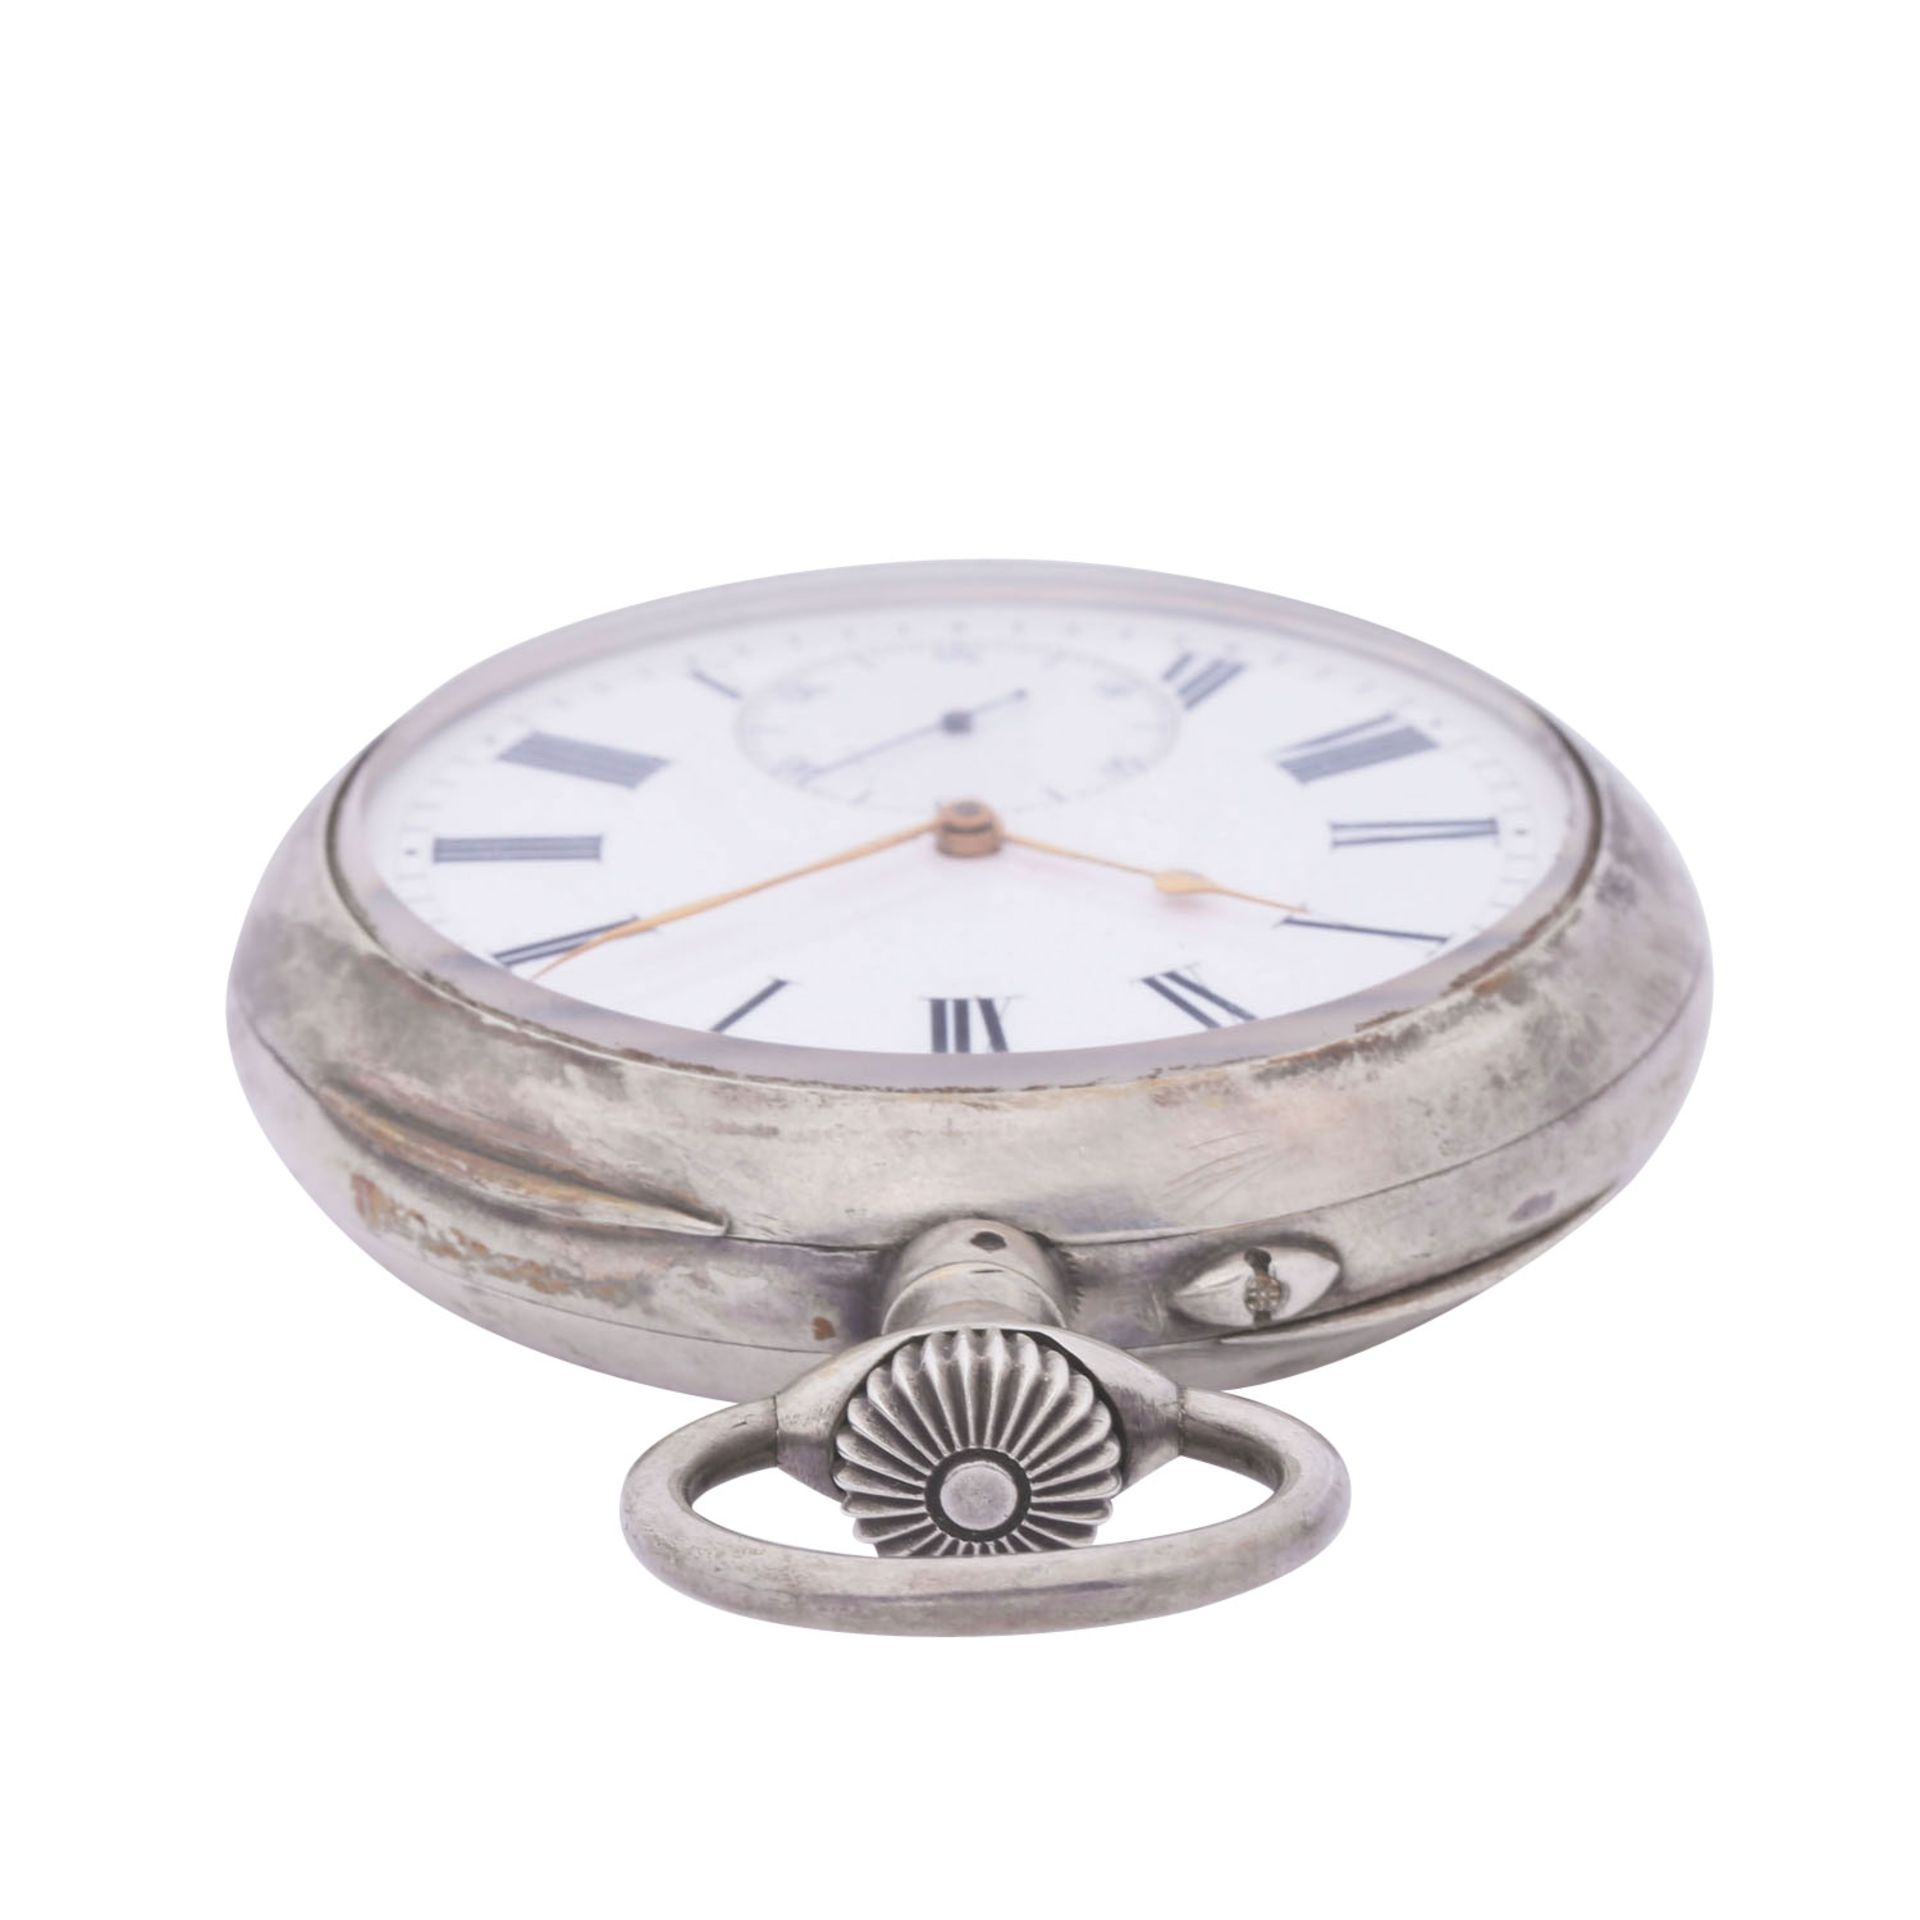 L. LEROY & Cie. Paris sehr seltener, großer und schwerer Taschenuhr Chronometer. Frankreich. - Image 8 of 12